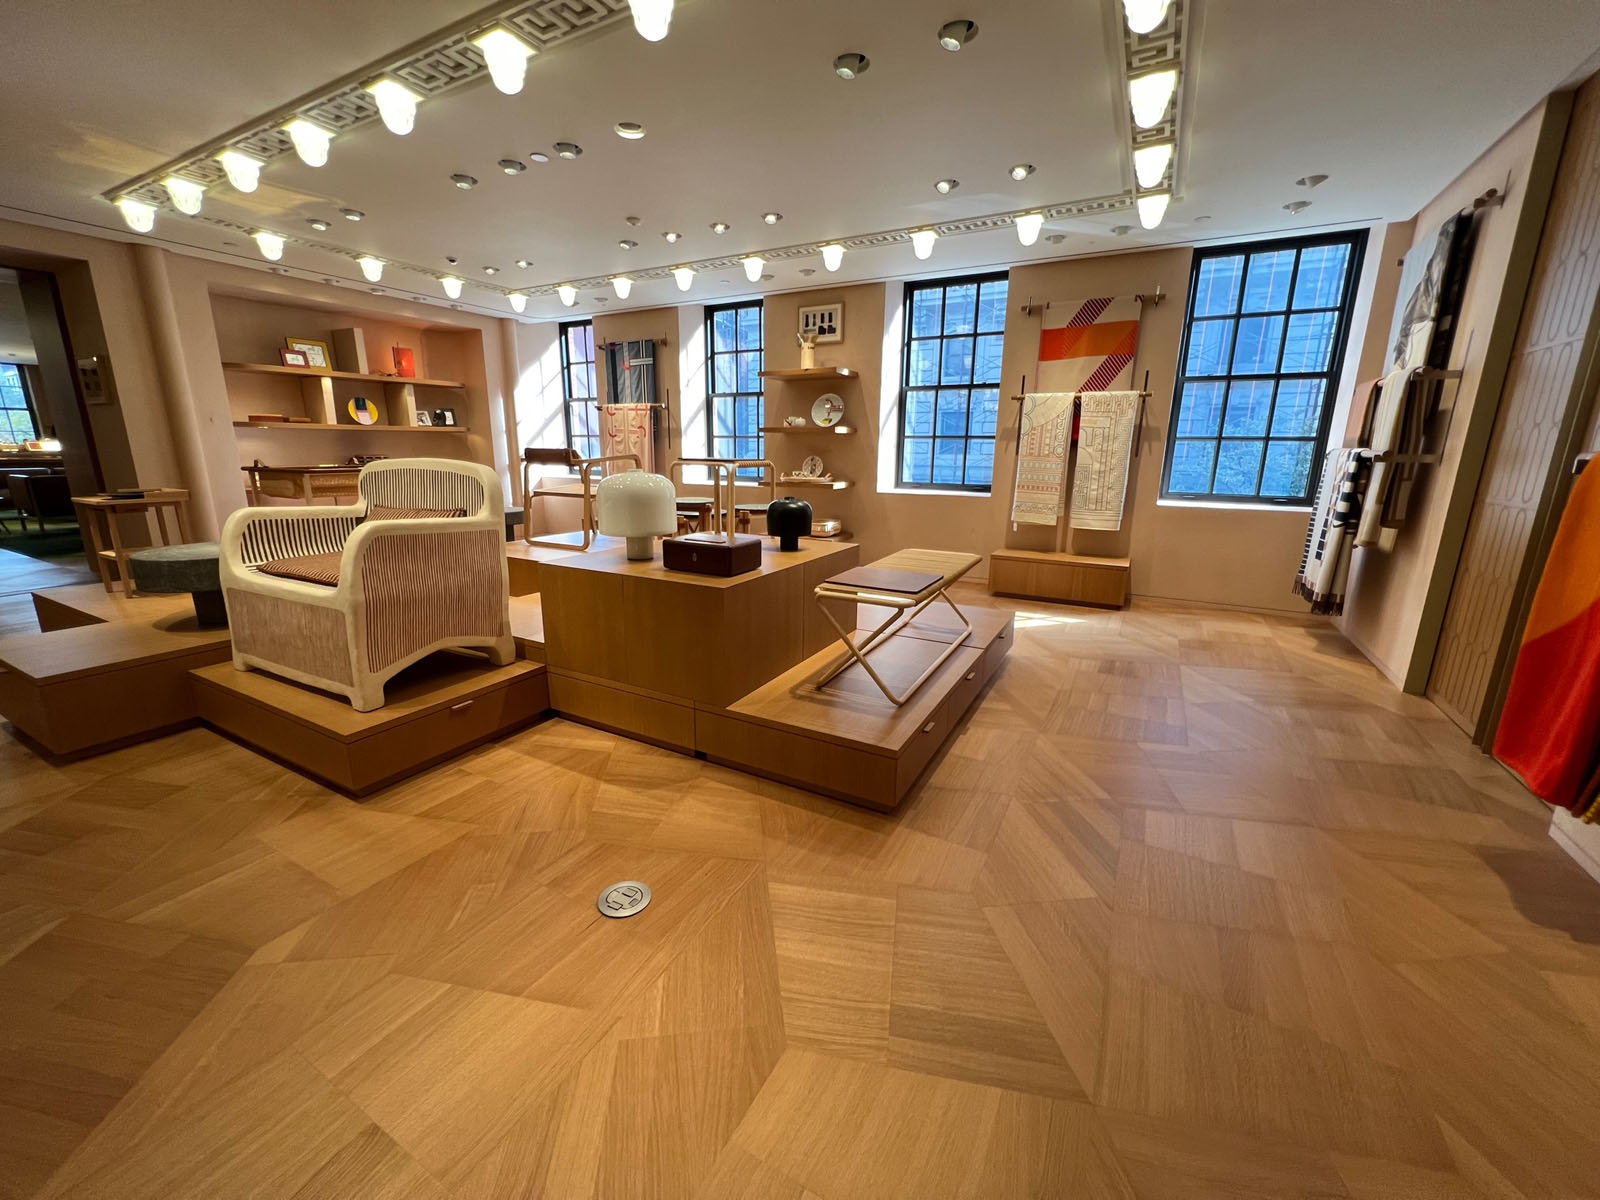 Ein Luxusgeschäft eröffnet in der Medison Avenue in New York